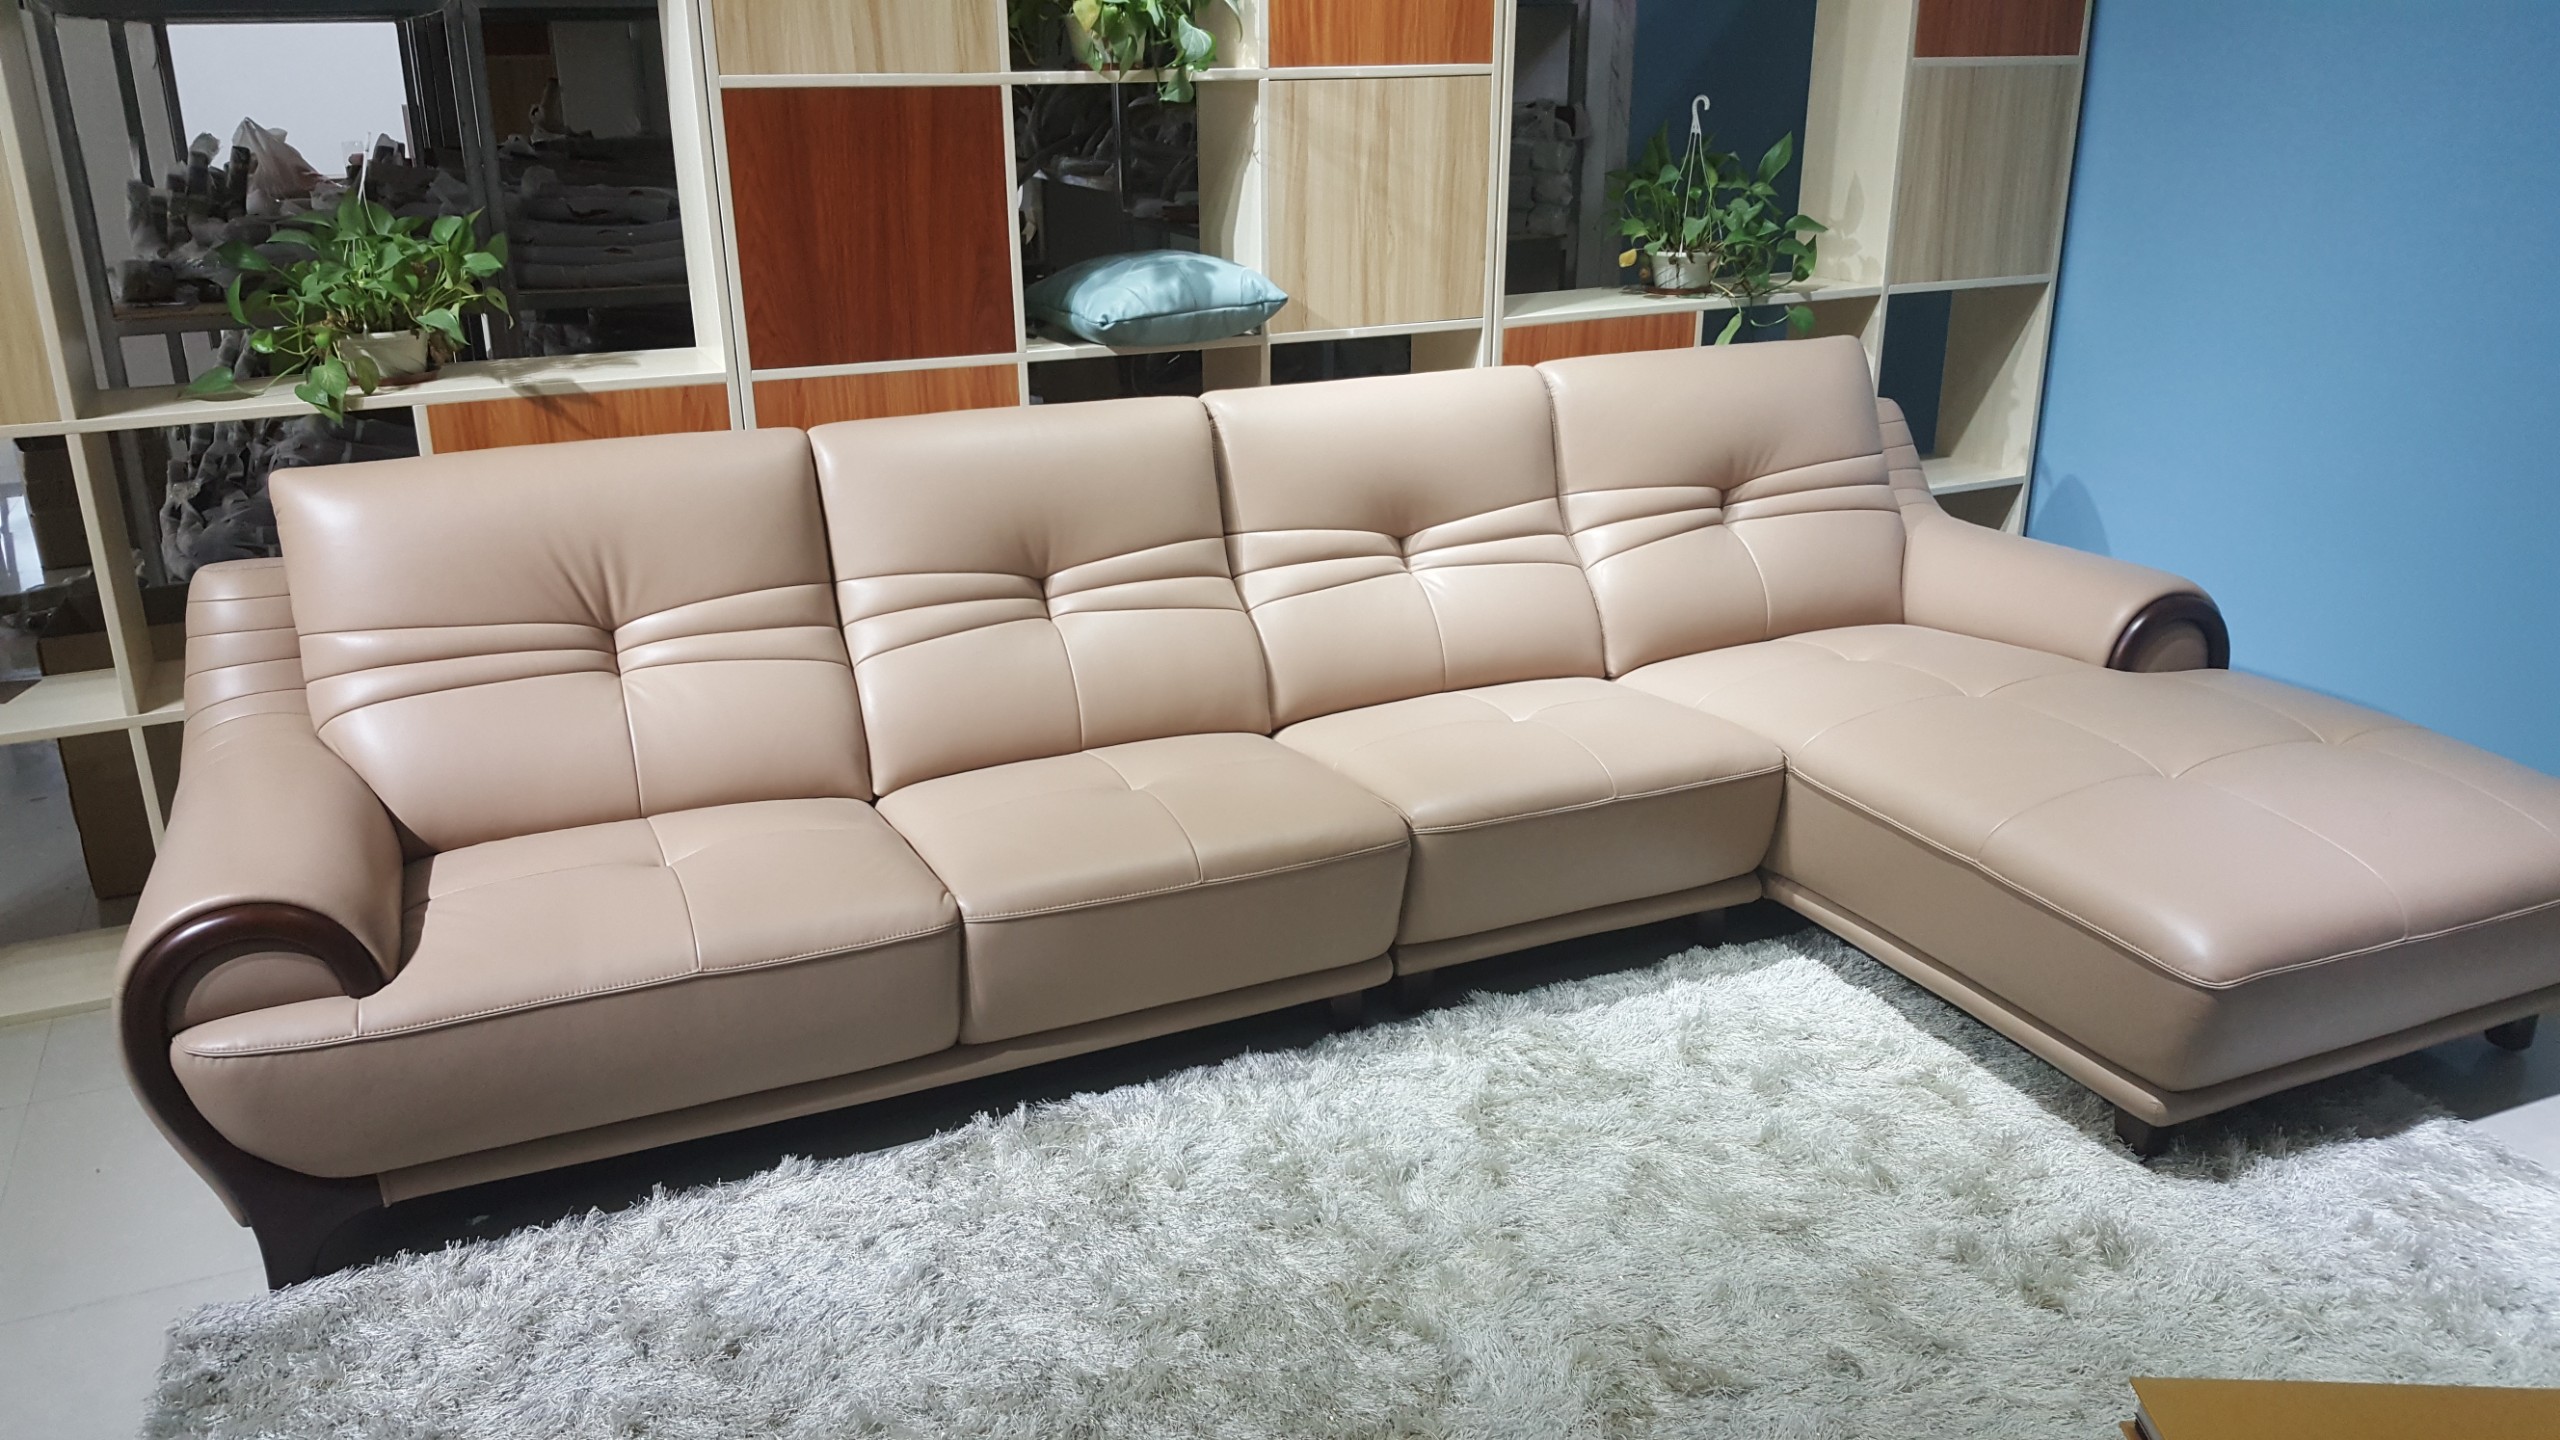 Bộ sofa phòng khách cho chung cư nhỏ gọn xu hướng 2019 - 2020